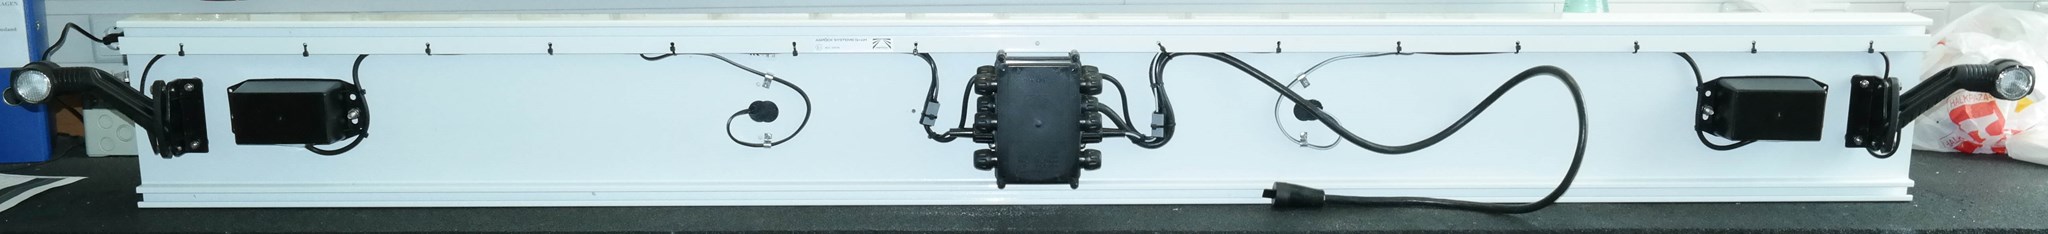 Imagen de 97-1190-007C Aspöck ALU Unterfahrschutz weiß Europoint III, Superpoint III LED